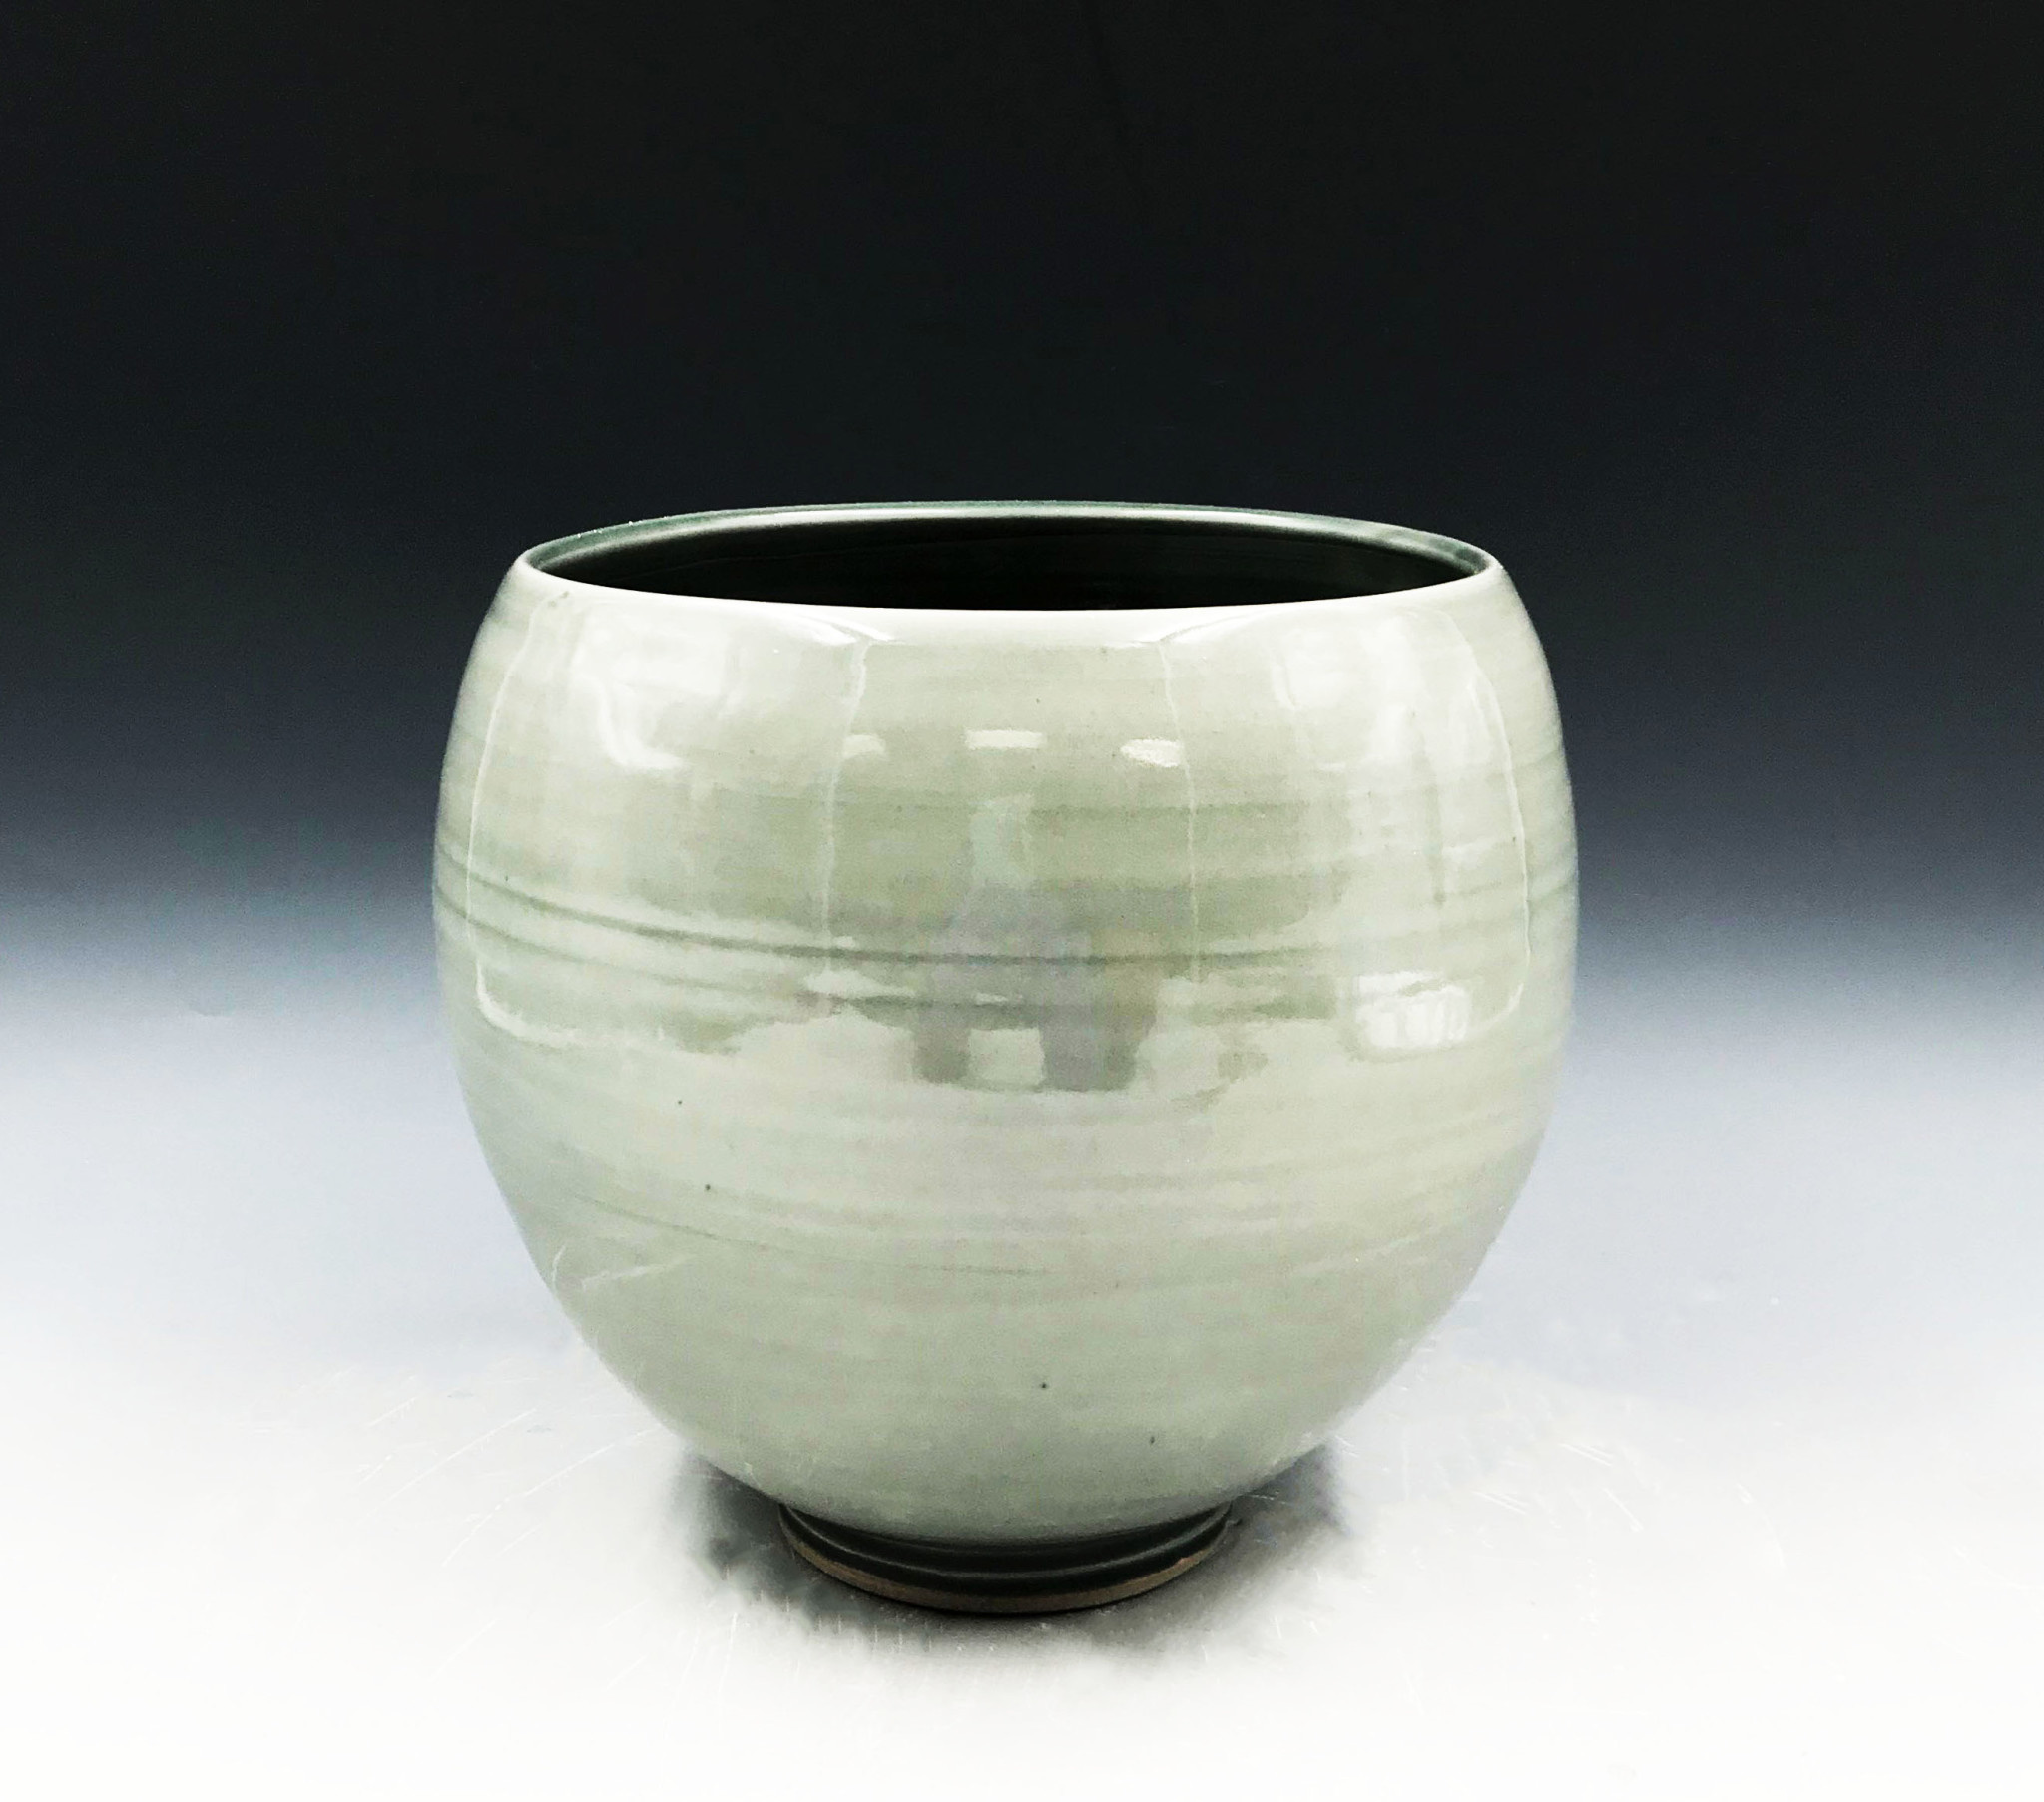 Mark Muscarello Blue/Gray Celadon Vase